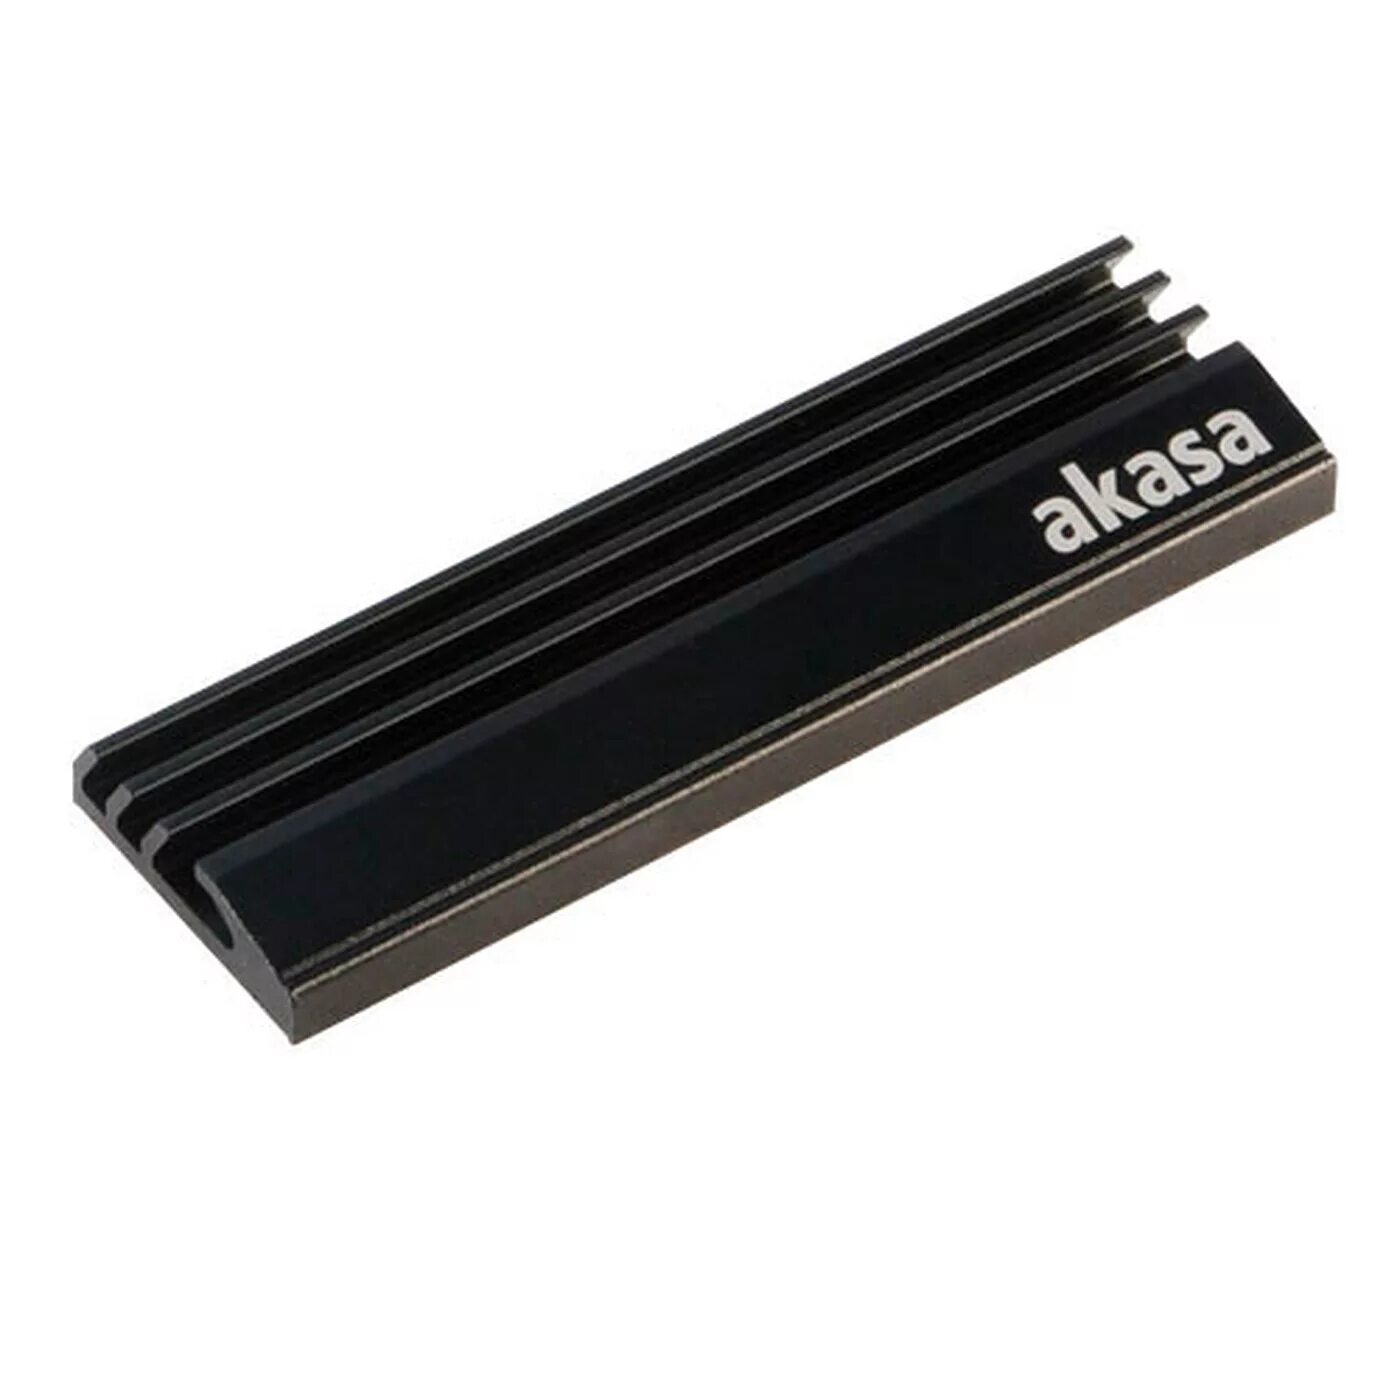 Радиатор для ssd купить. Akasa [a-m2hs01-BK]. Радиатор для SSD M.2. Радиатор Akasa m.2 SSD. Радиатор теплоотвода SSD M.2.